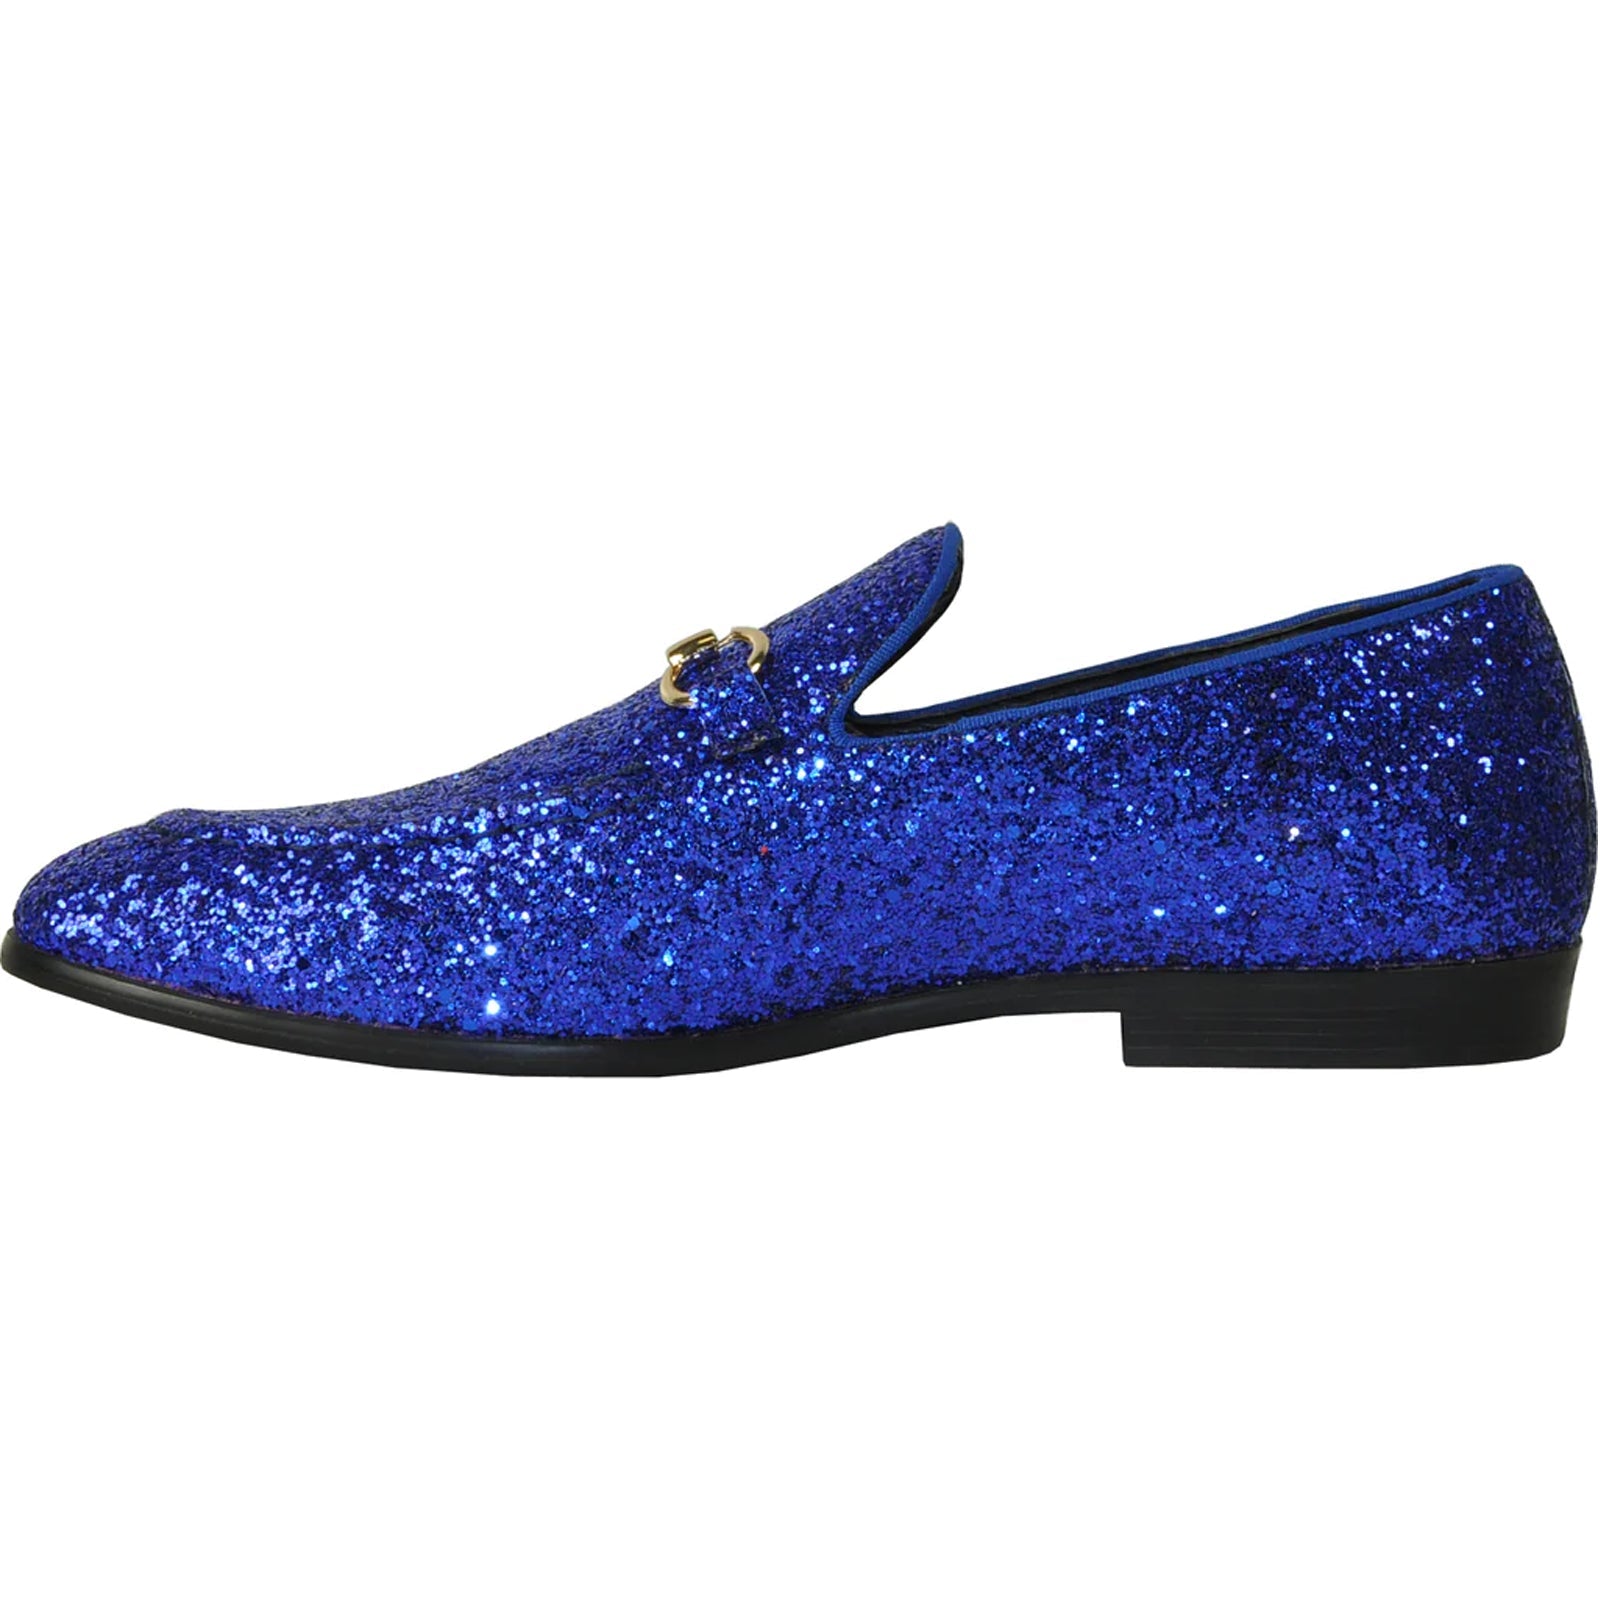 "Royal Blue Glitter Sequin Men's Prom Tuxedo Loafer - Modern Style"